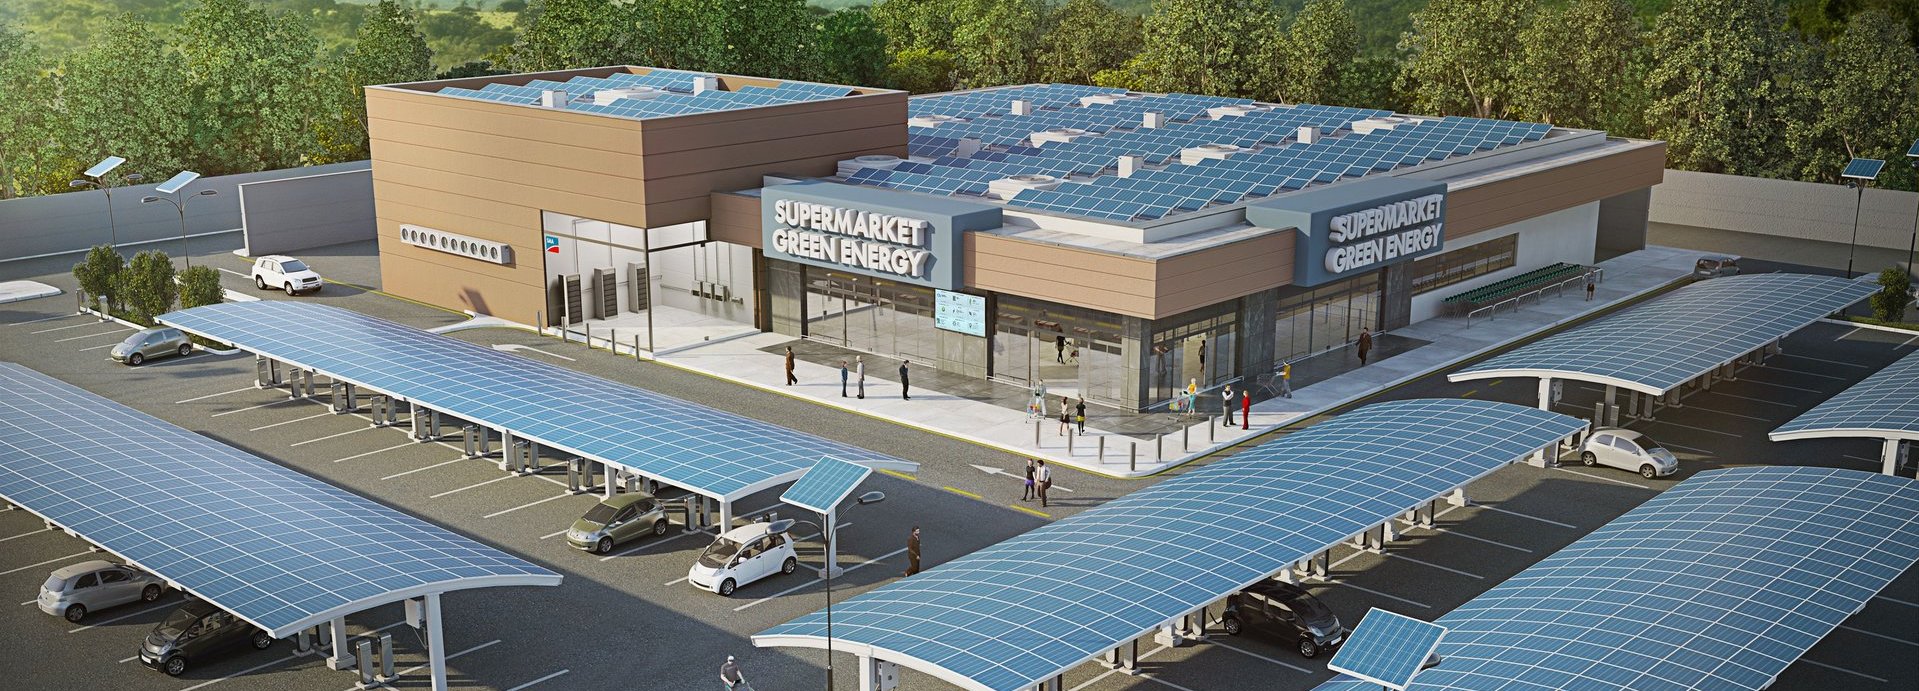 Erneuerbare Energien Supermarkt mit Solarbetriebenen Ladestellen für elektrische Autos auf dem Parkplatz